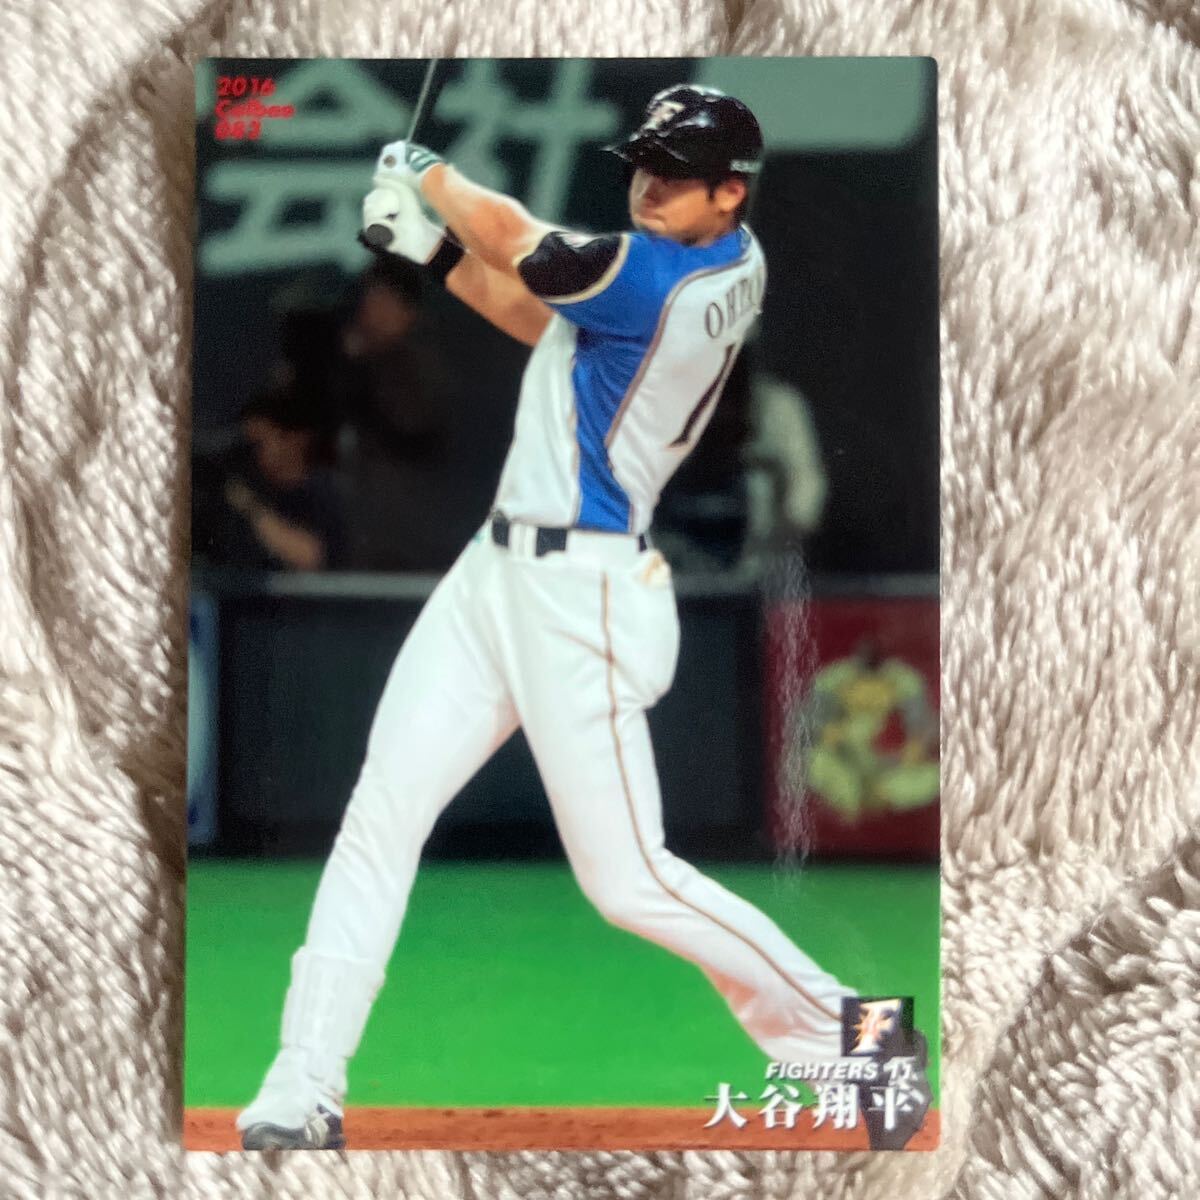 2014-2016 カルビー プロ野球チップス 大谷翔平 カード4枚セット_画像8